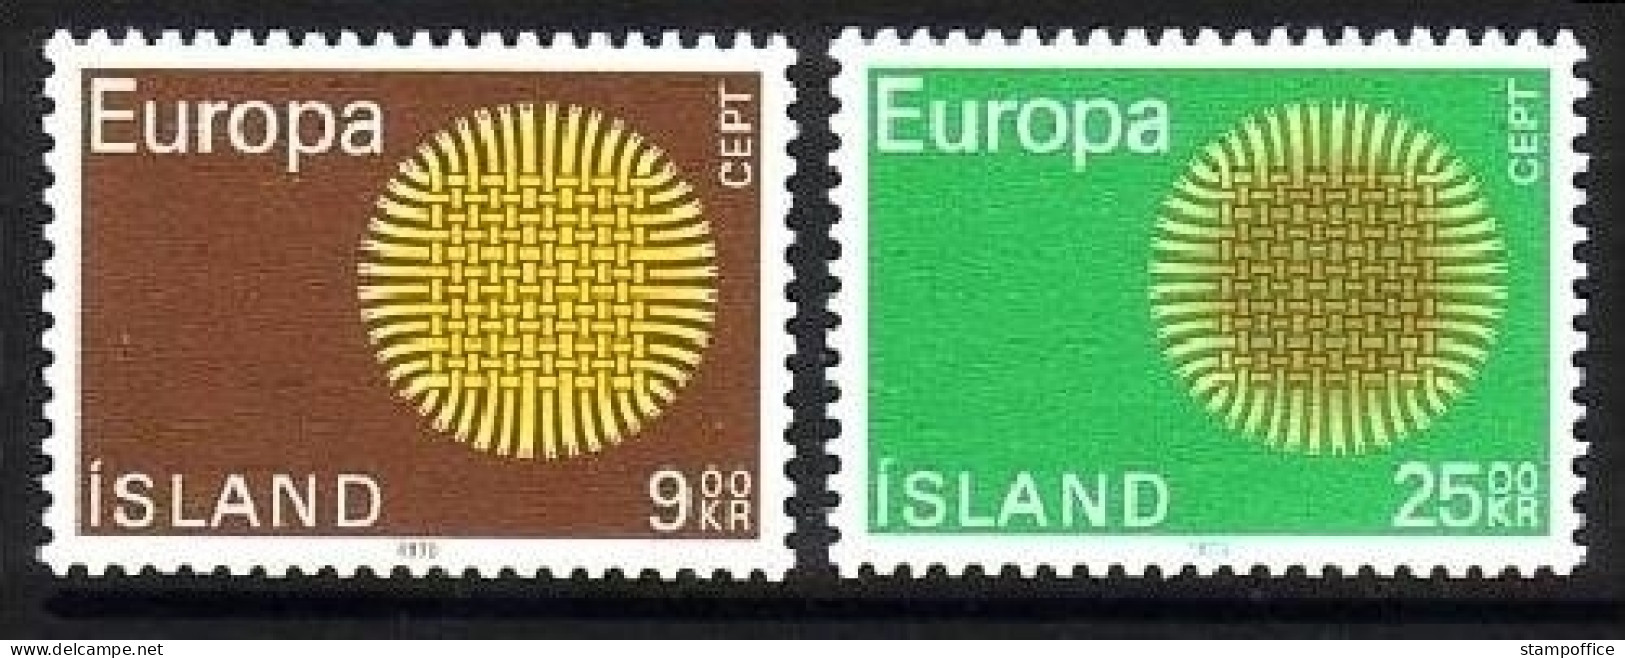 ISLAND MI-NR. 442-443 POSTFRISCH(MINT) EUROPA 1970 SONNENSYMBOL - 1970